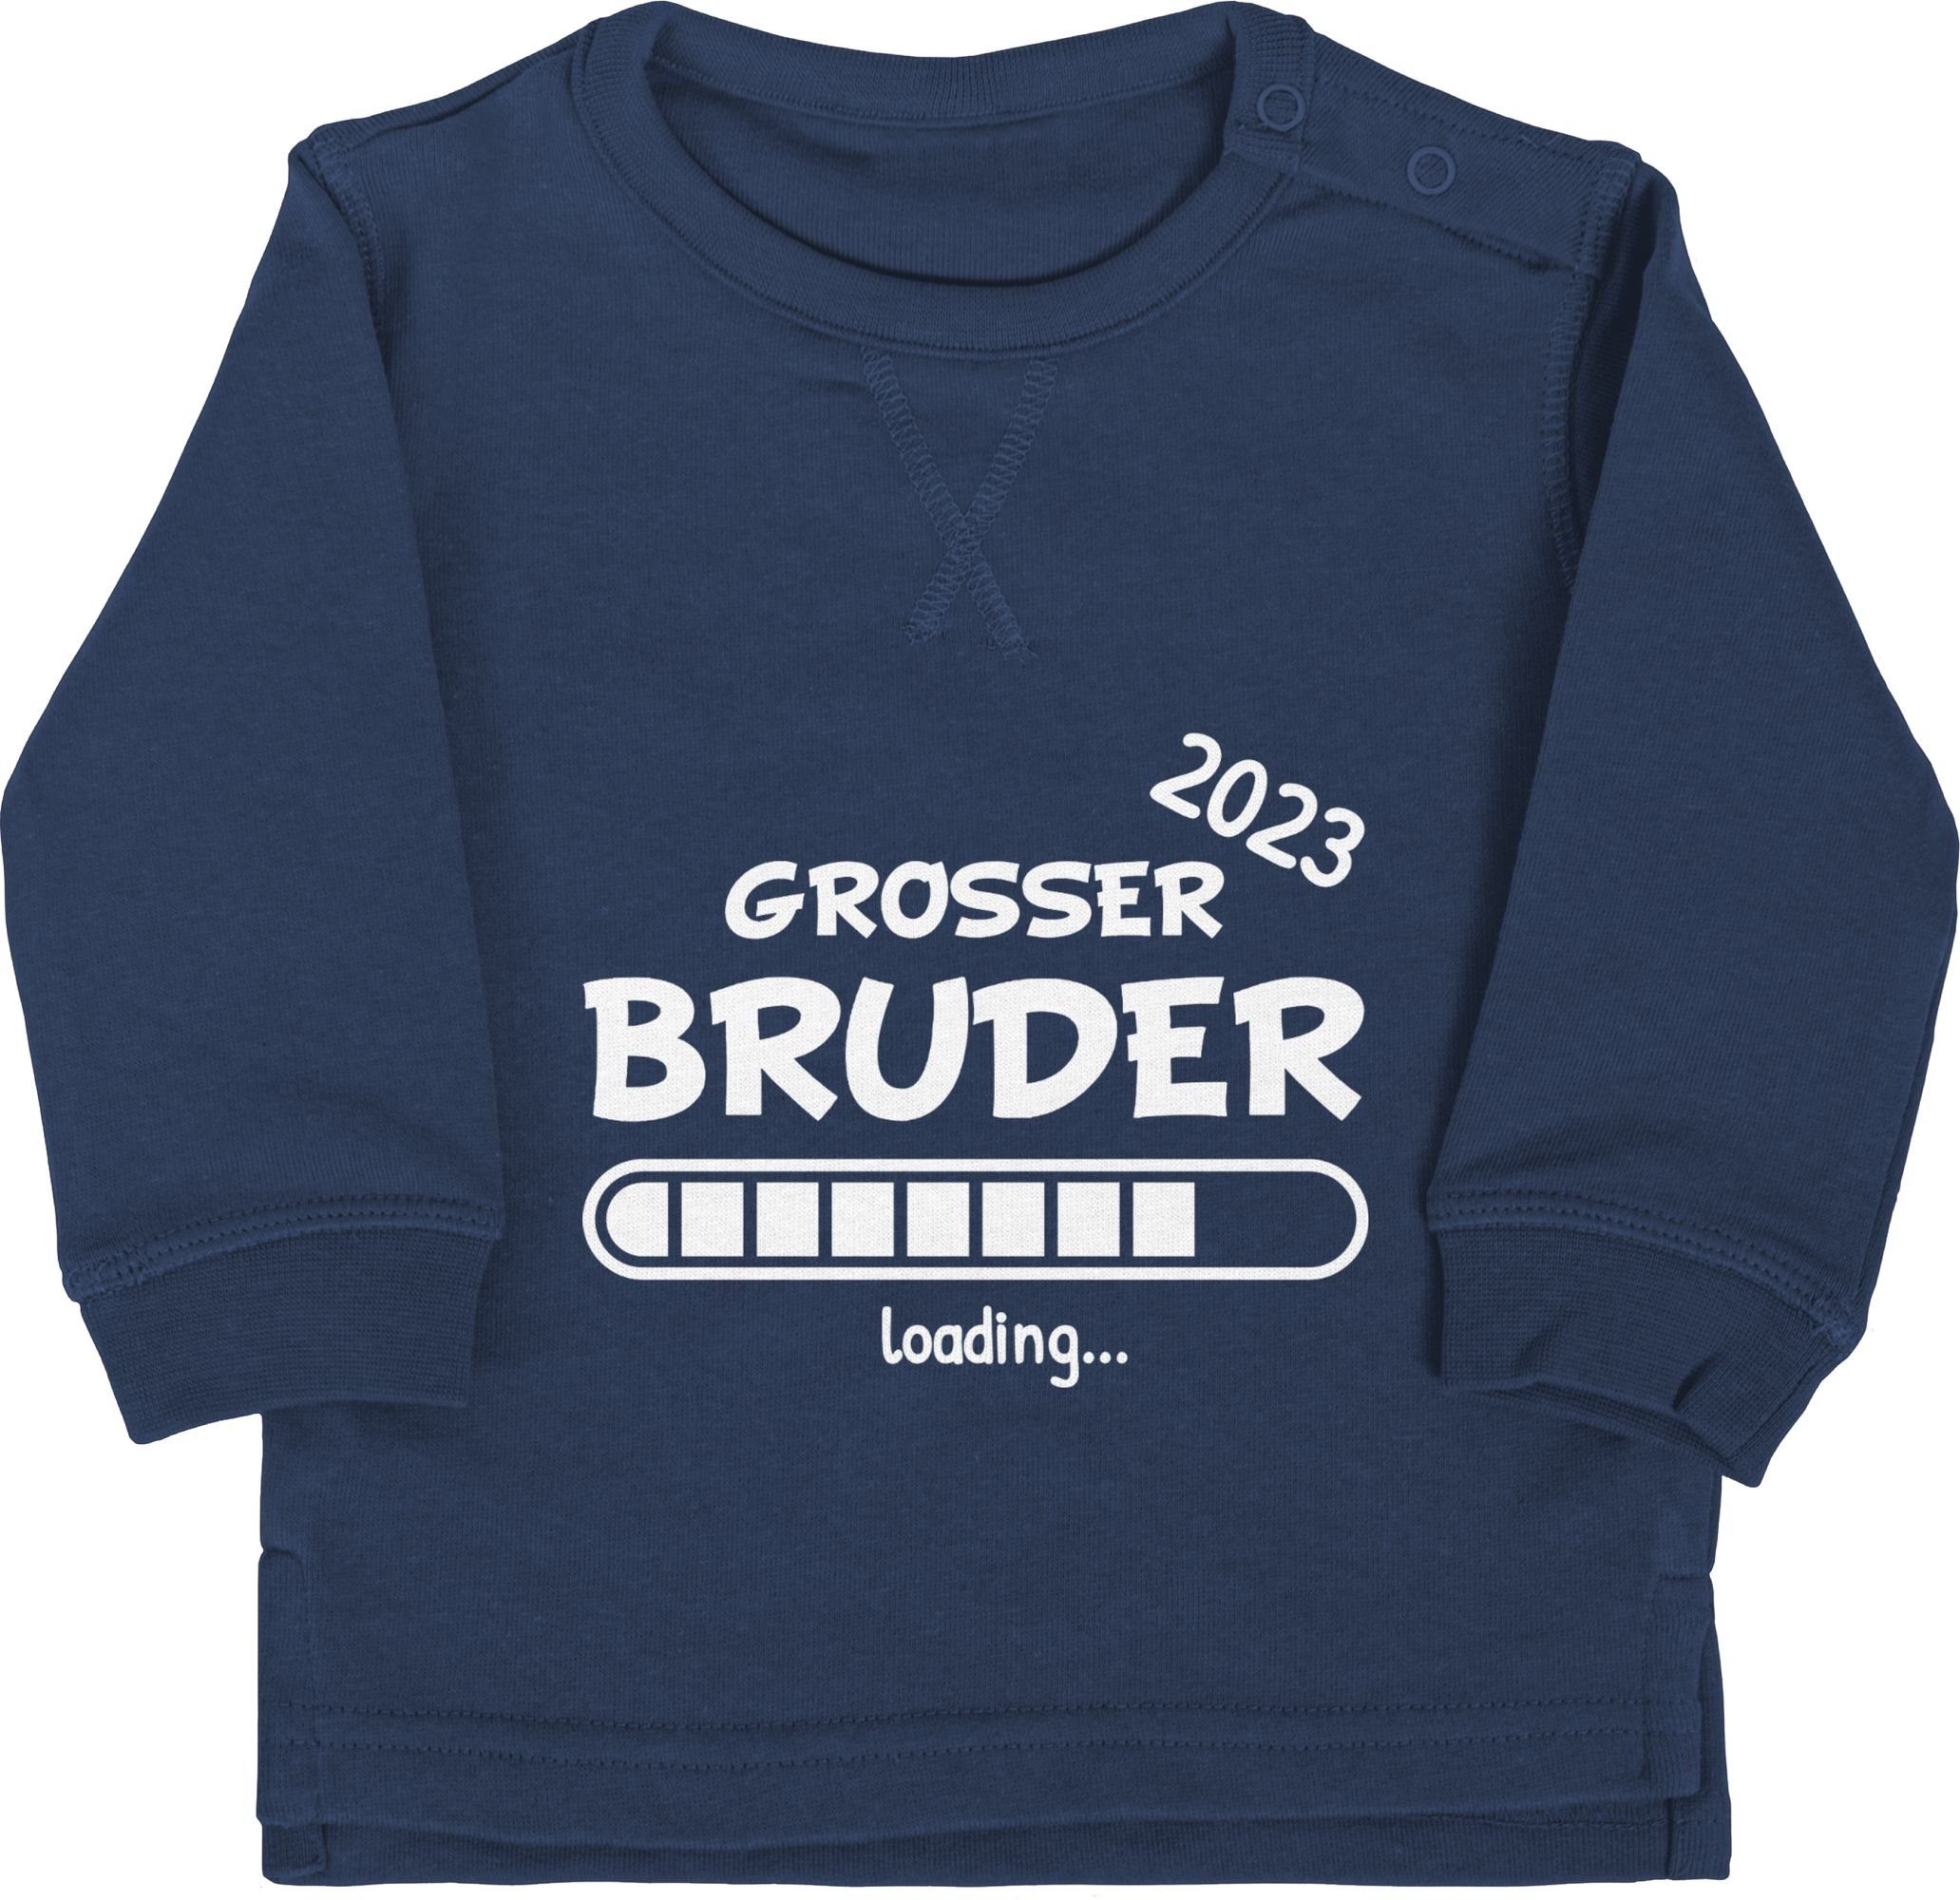 Shirtracer Sweatshirt Großer Bruder loading 2023 Großer Bruder 1 Navy Blau